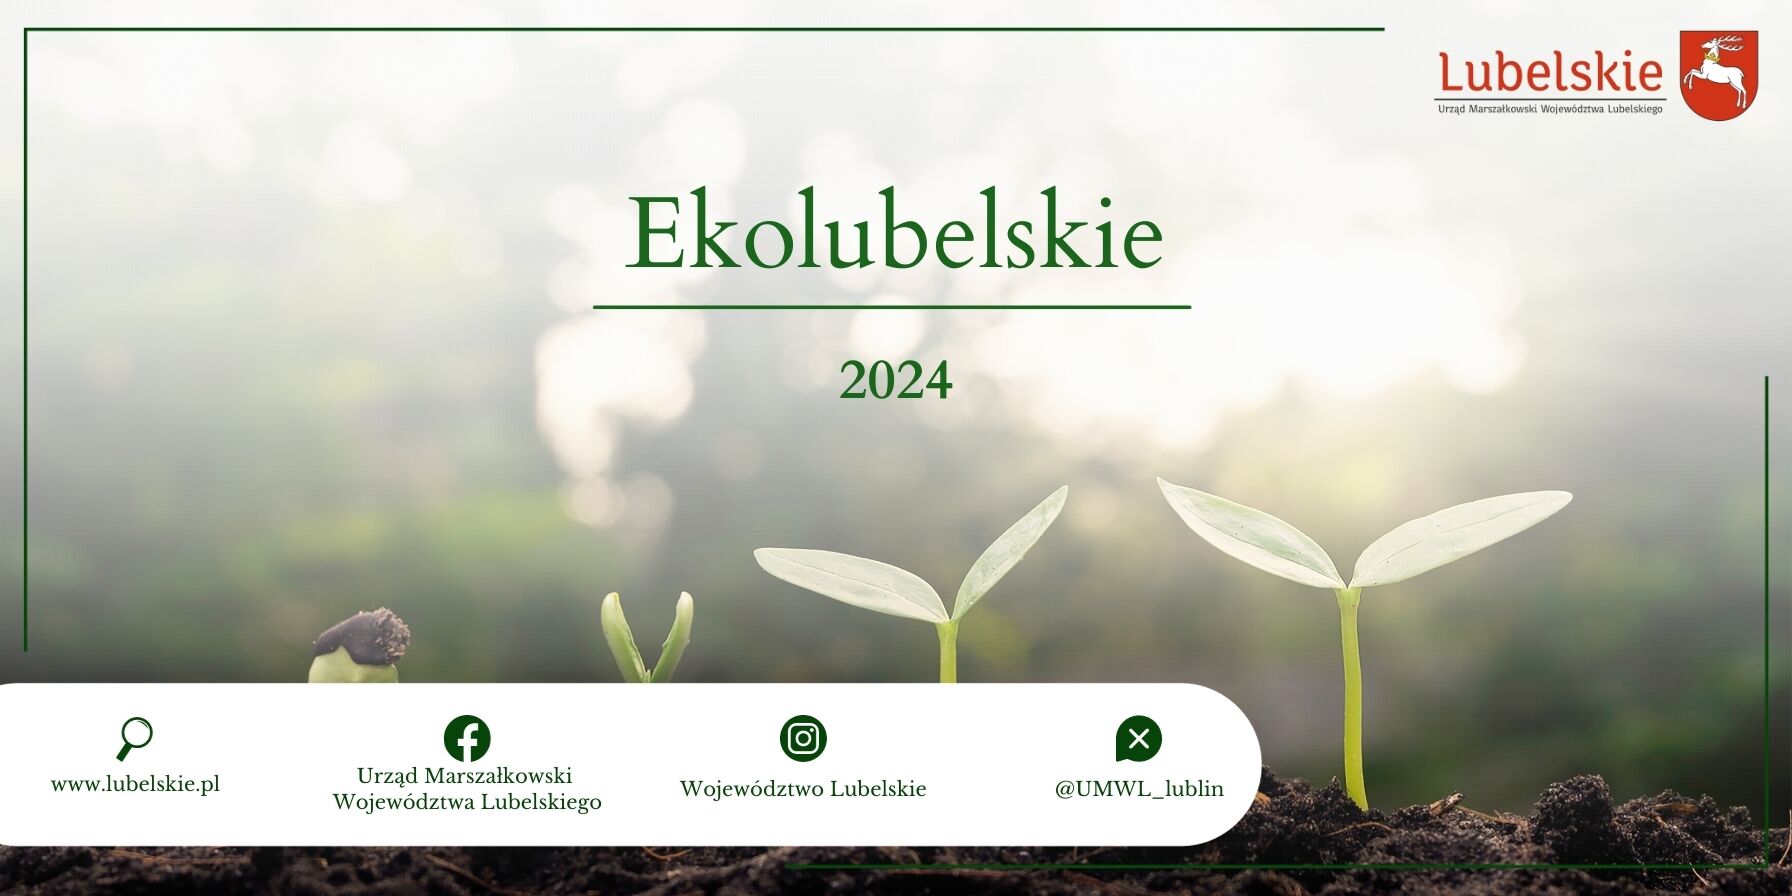 Na zdjęciu widoczne są trzy rosnące sadzonki na tle zamglonego lasu z napisem "EkoLubelskie 2024" oraz logotypami instytucji.